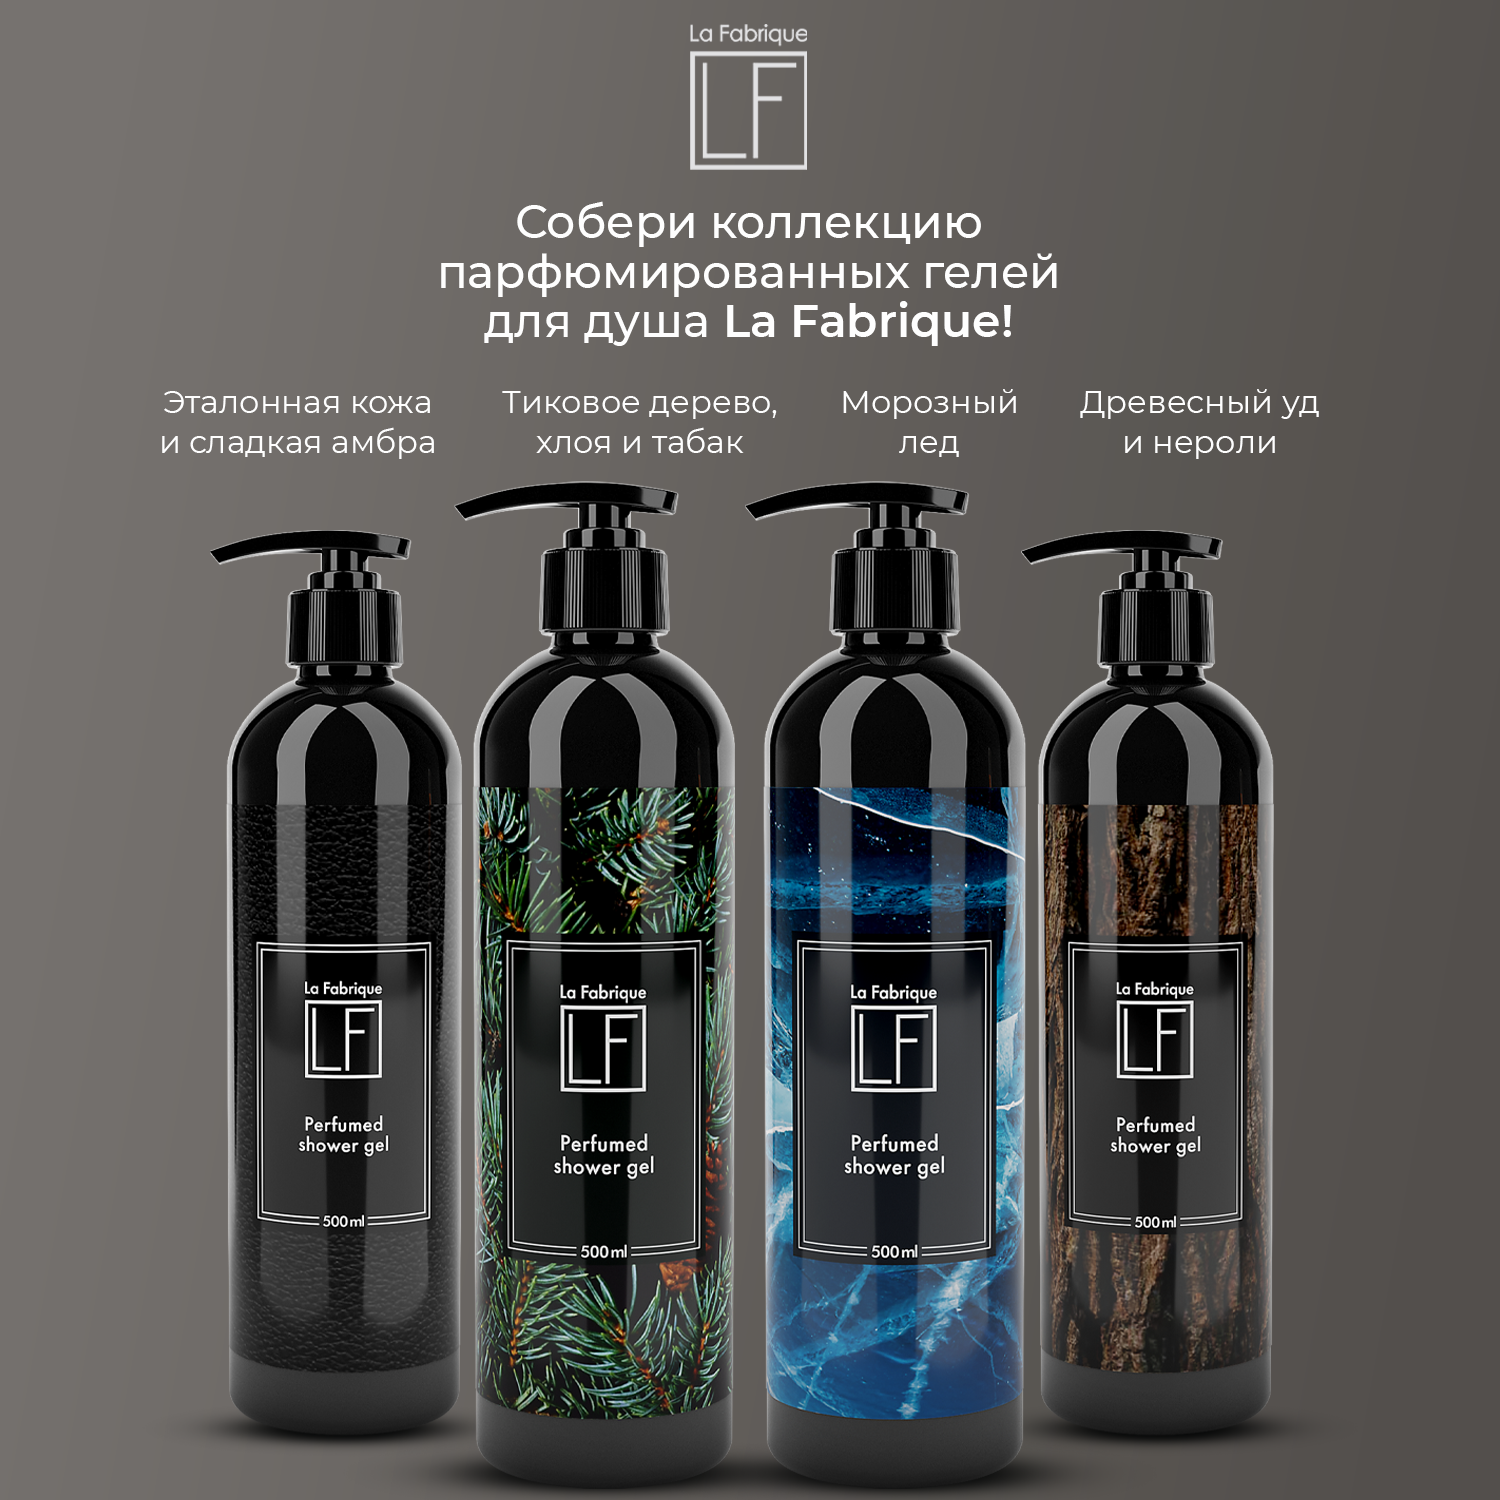 Гель для душа La Fabrique мужской парфюмированный с ароматом эталонной кожи и сладкой амбры 500 мл - фото 9